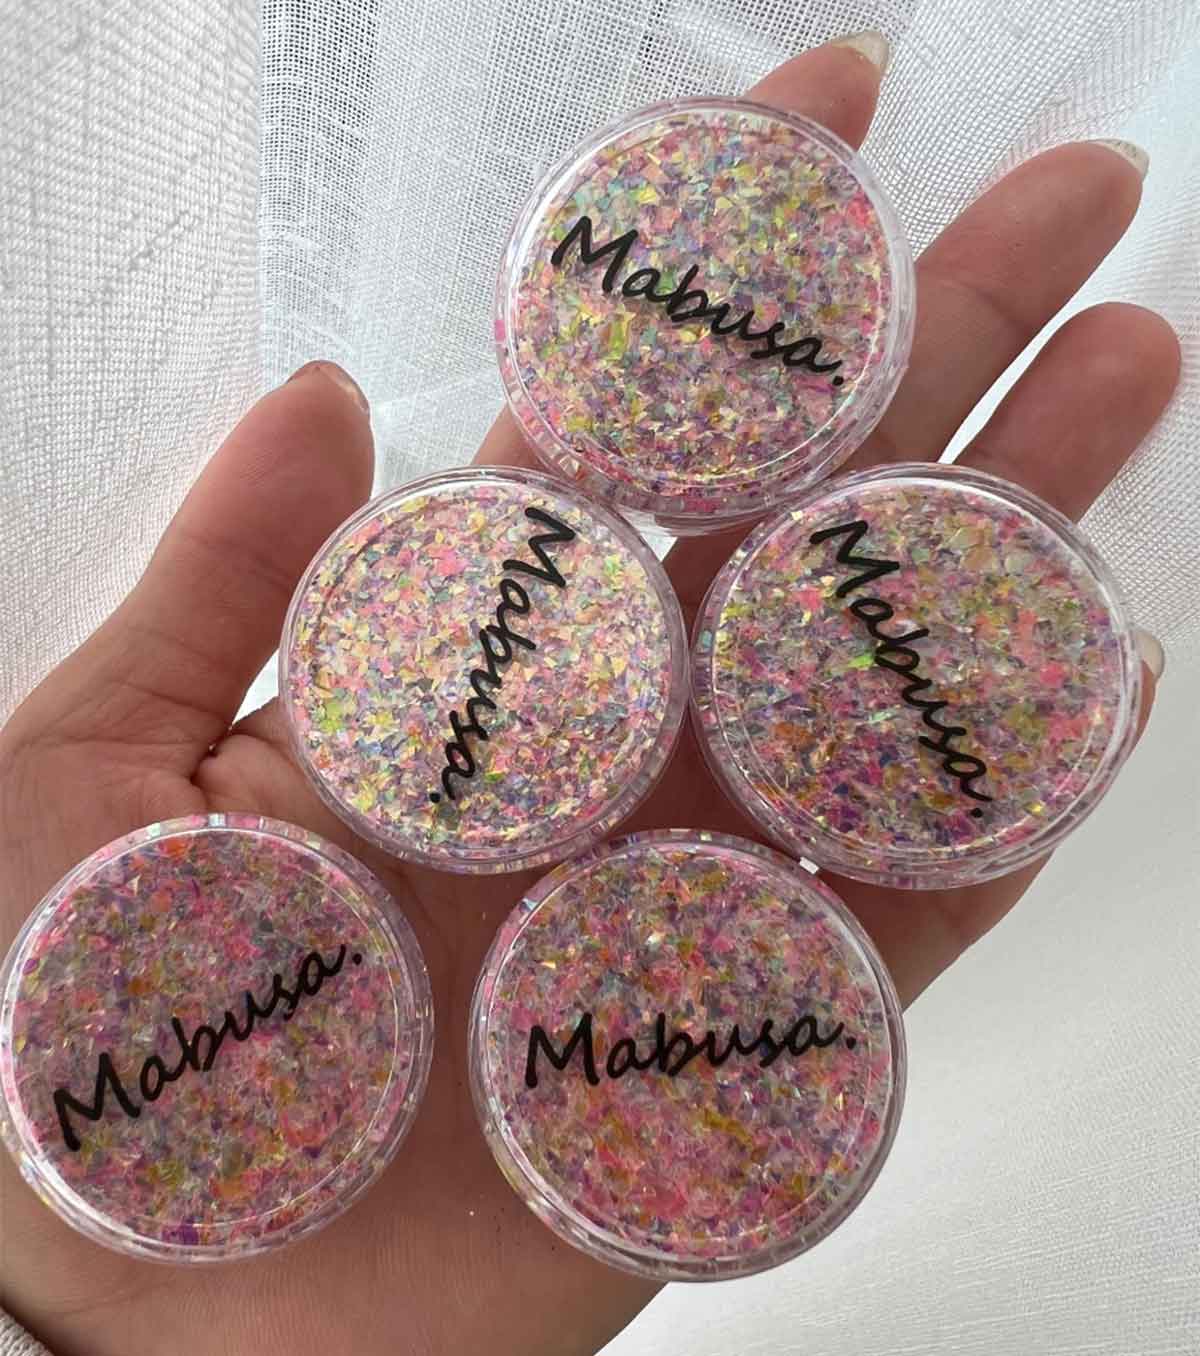 Mabusa pink confetti glitter